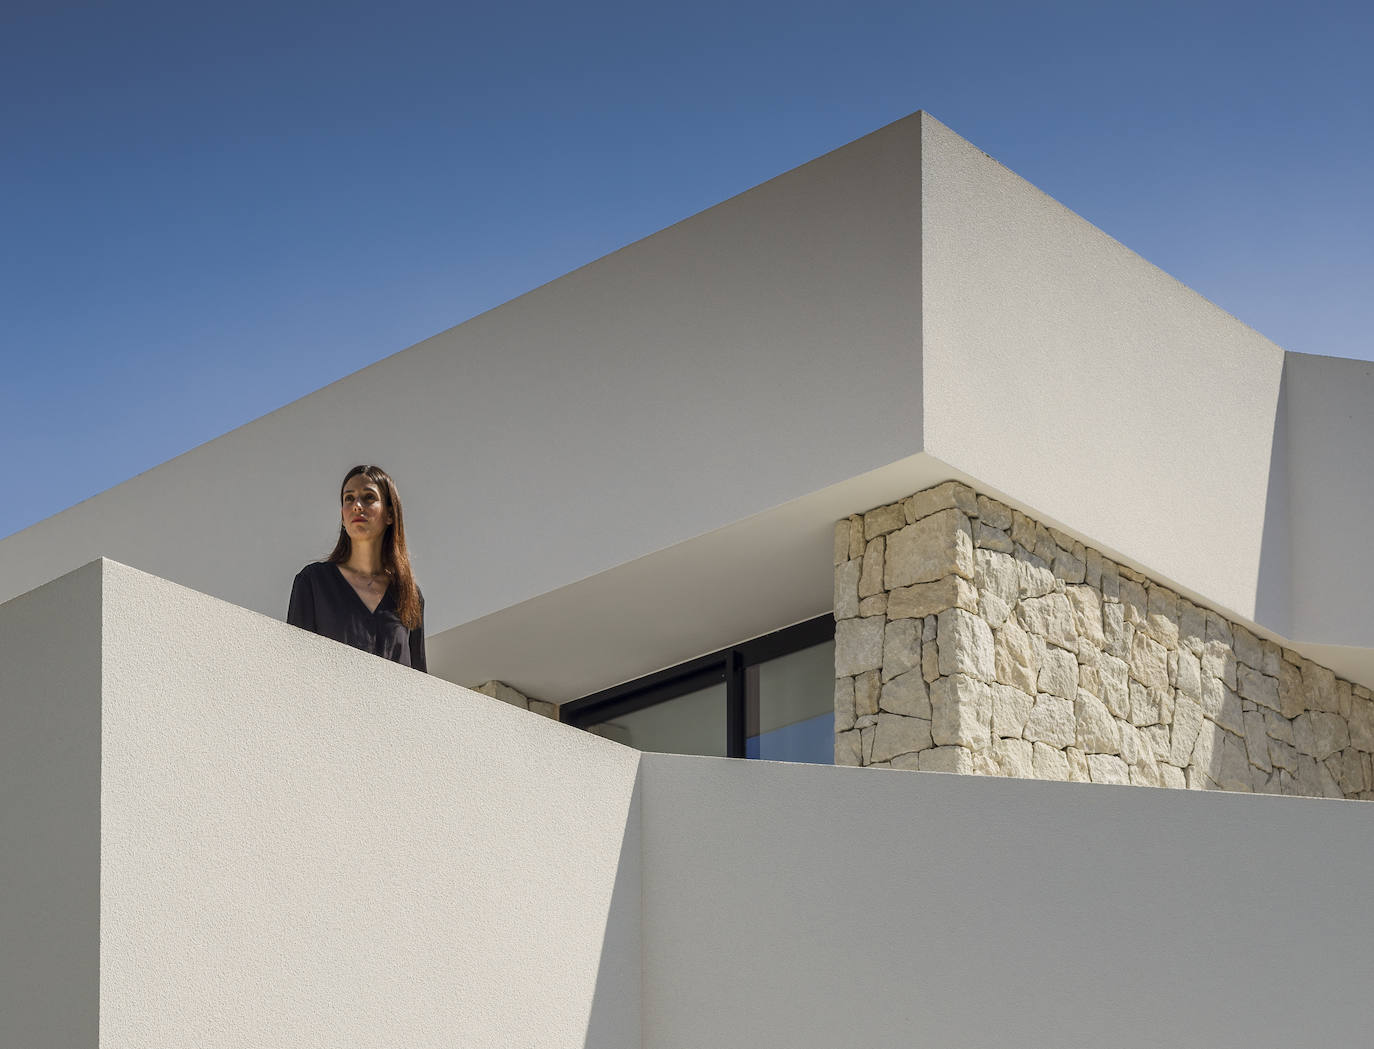 Fotos: Teoina, la casa valenciana que se ha convertido en un referente de estilo